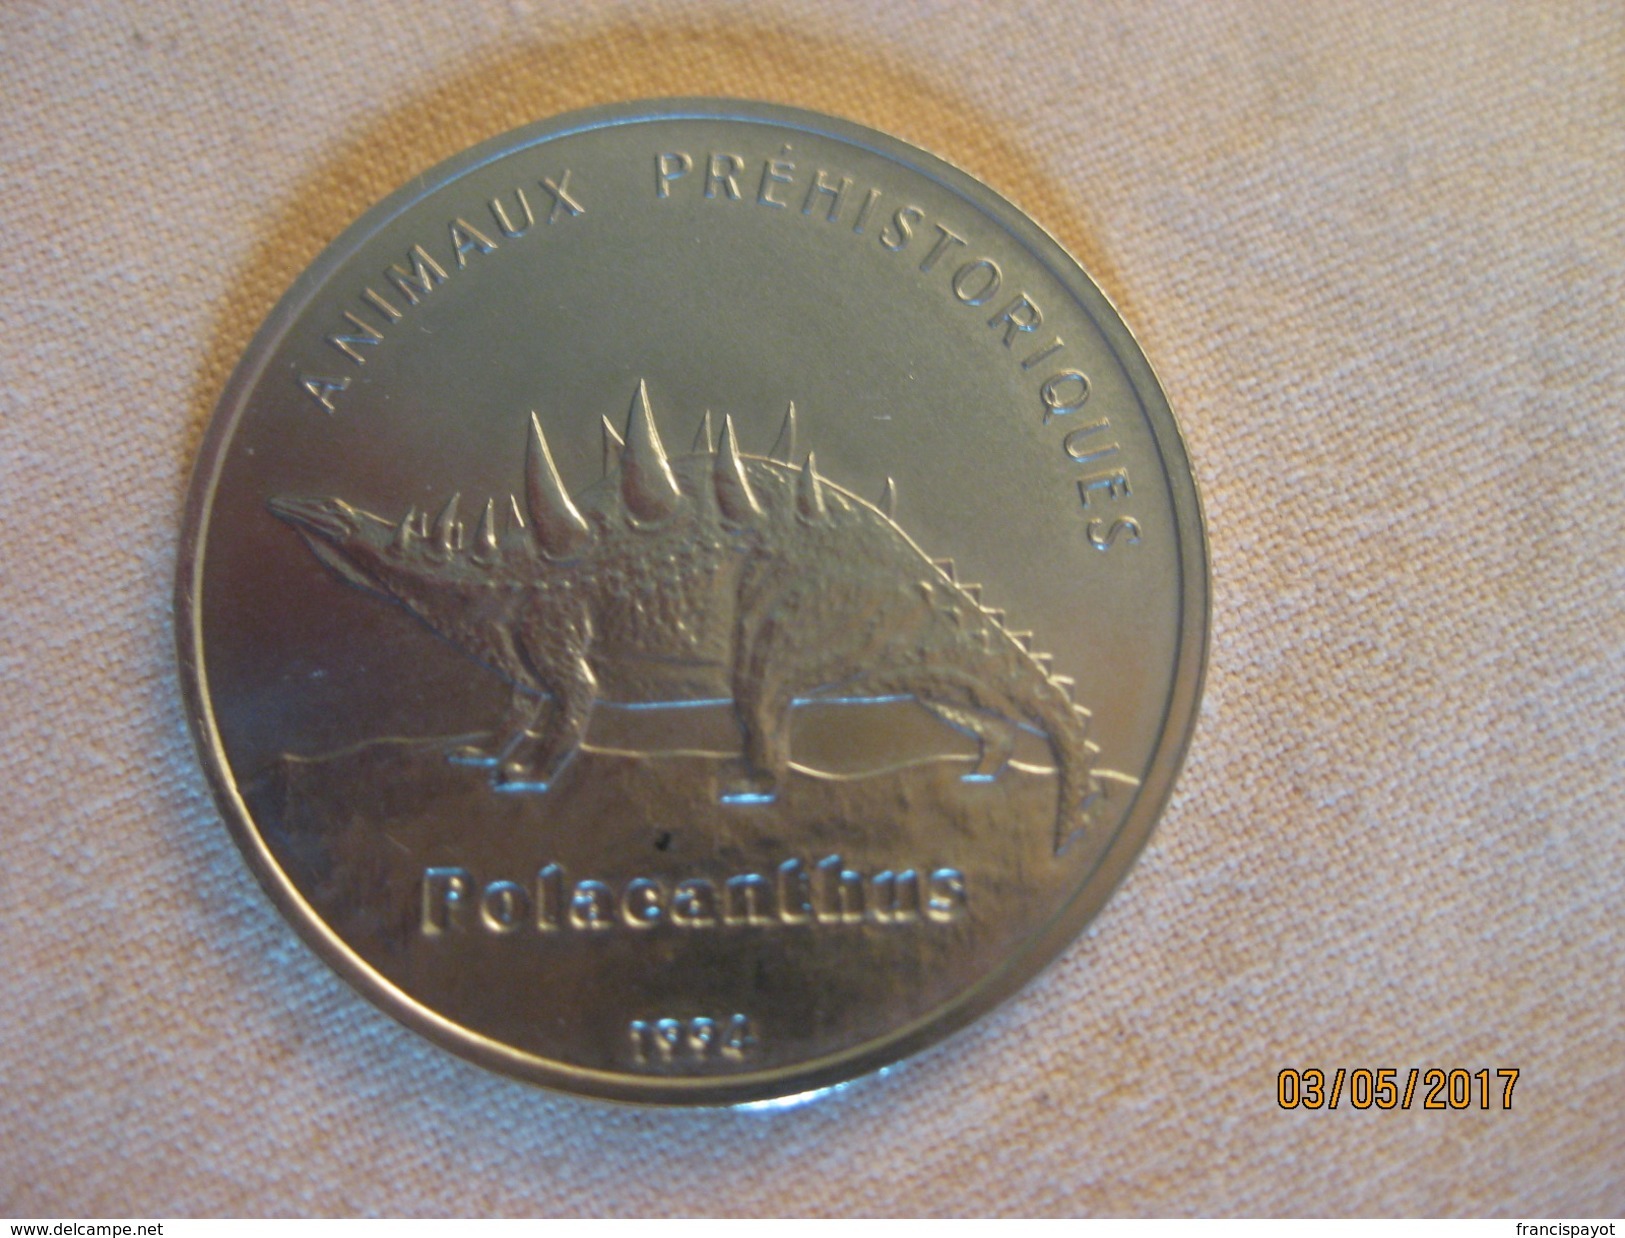 Congo-Brazzaville: 100 Francs 1994 (polacanthus) - Congo (Republic 1960)